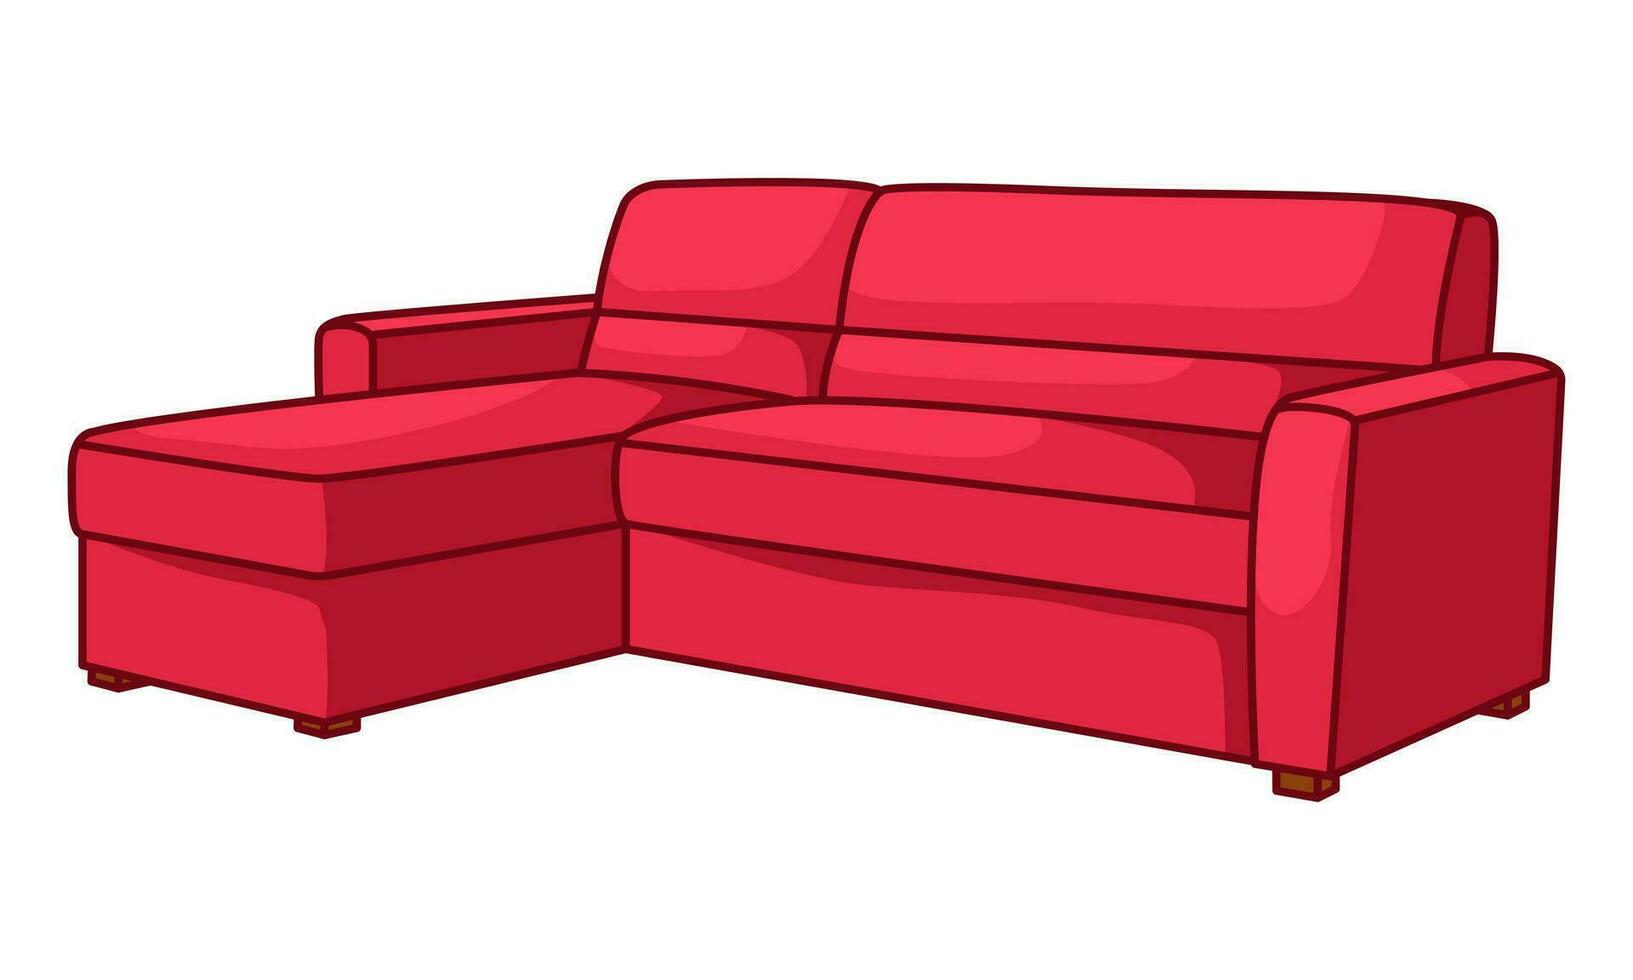 Karikatur Vektor Illustration von ein Sofa. komfortabel Möbel zum Innere Design, hervorgehoben auf ein Weiß Hintergrund. modern Sofa Modell- Symbol.